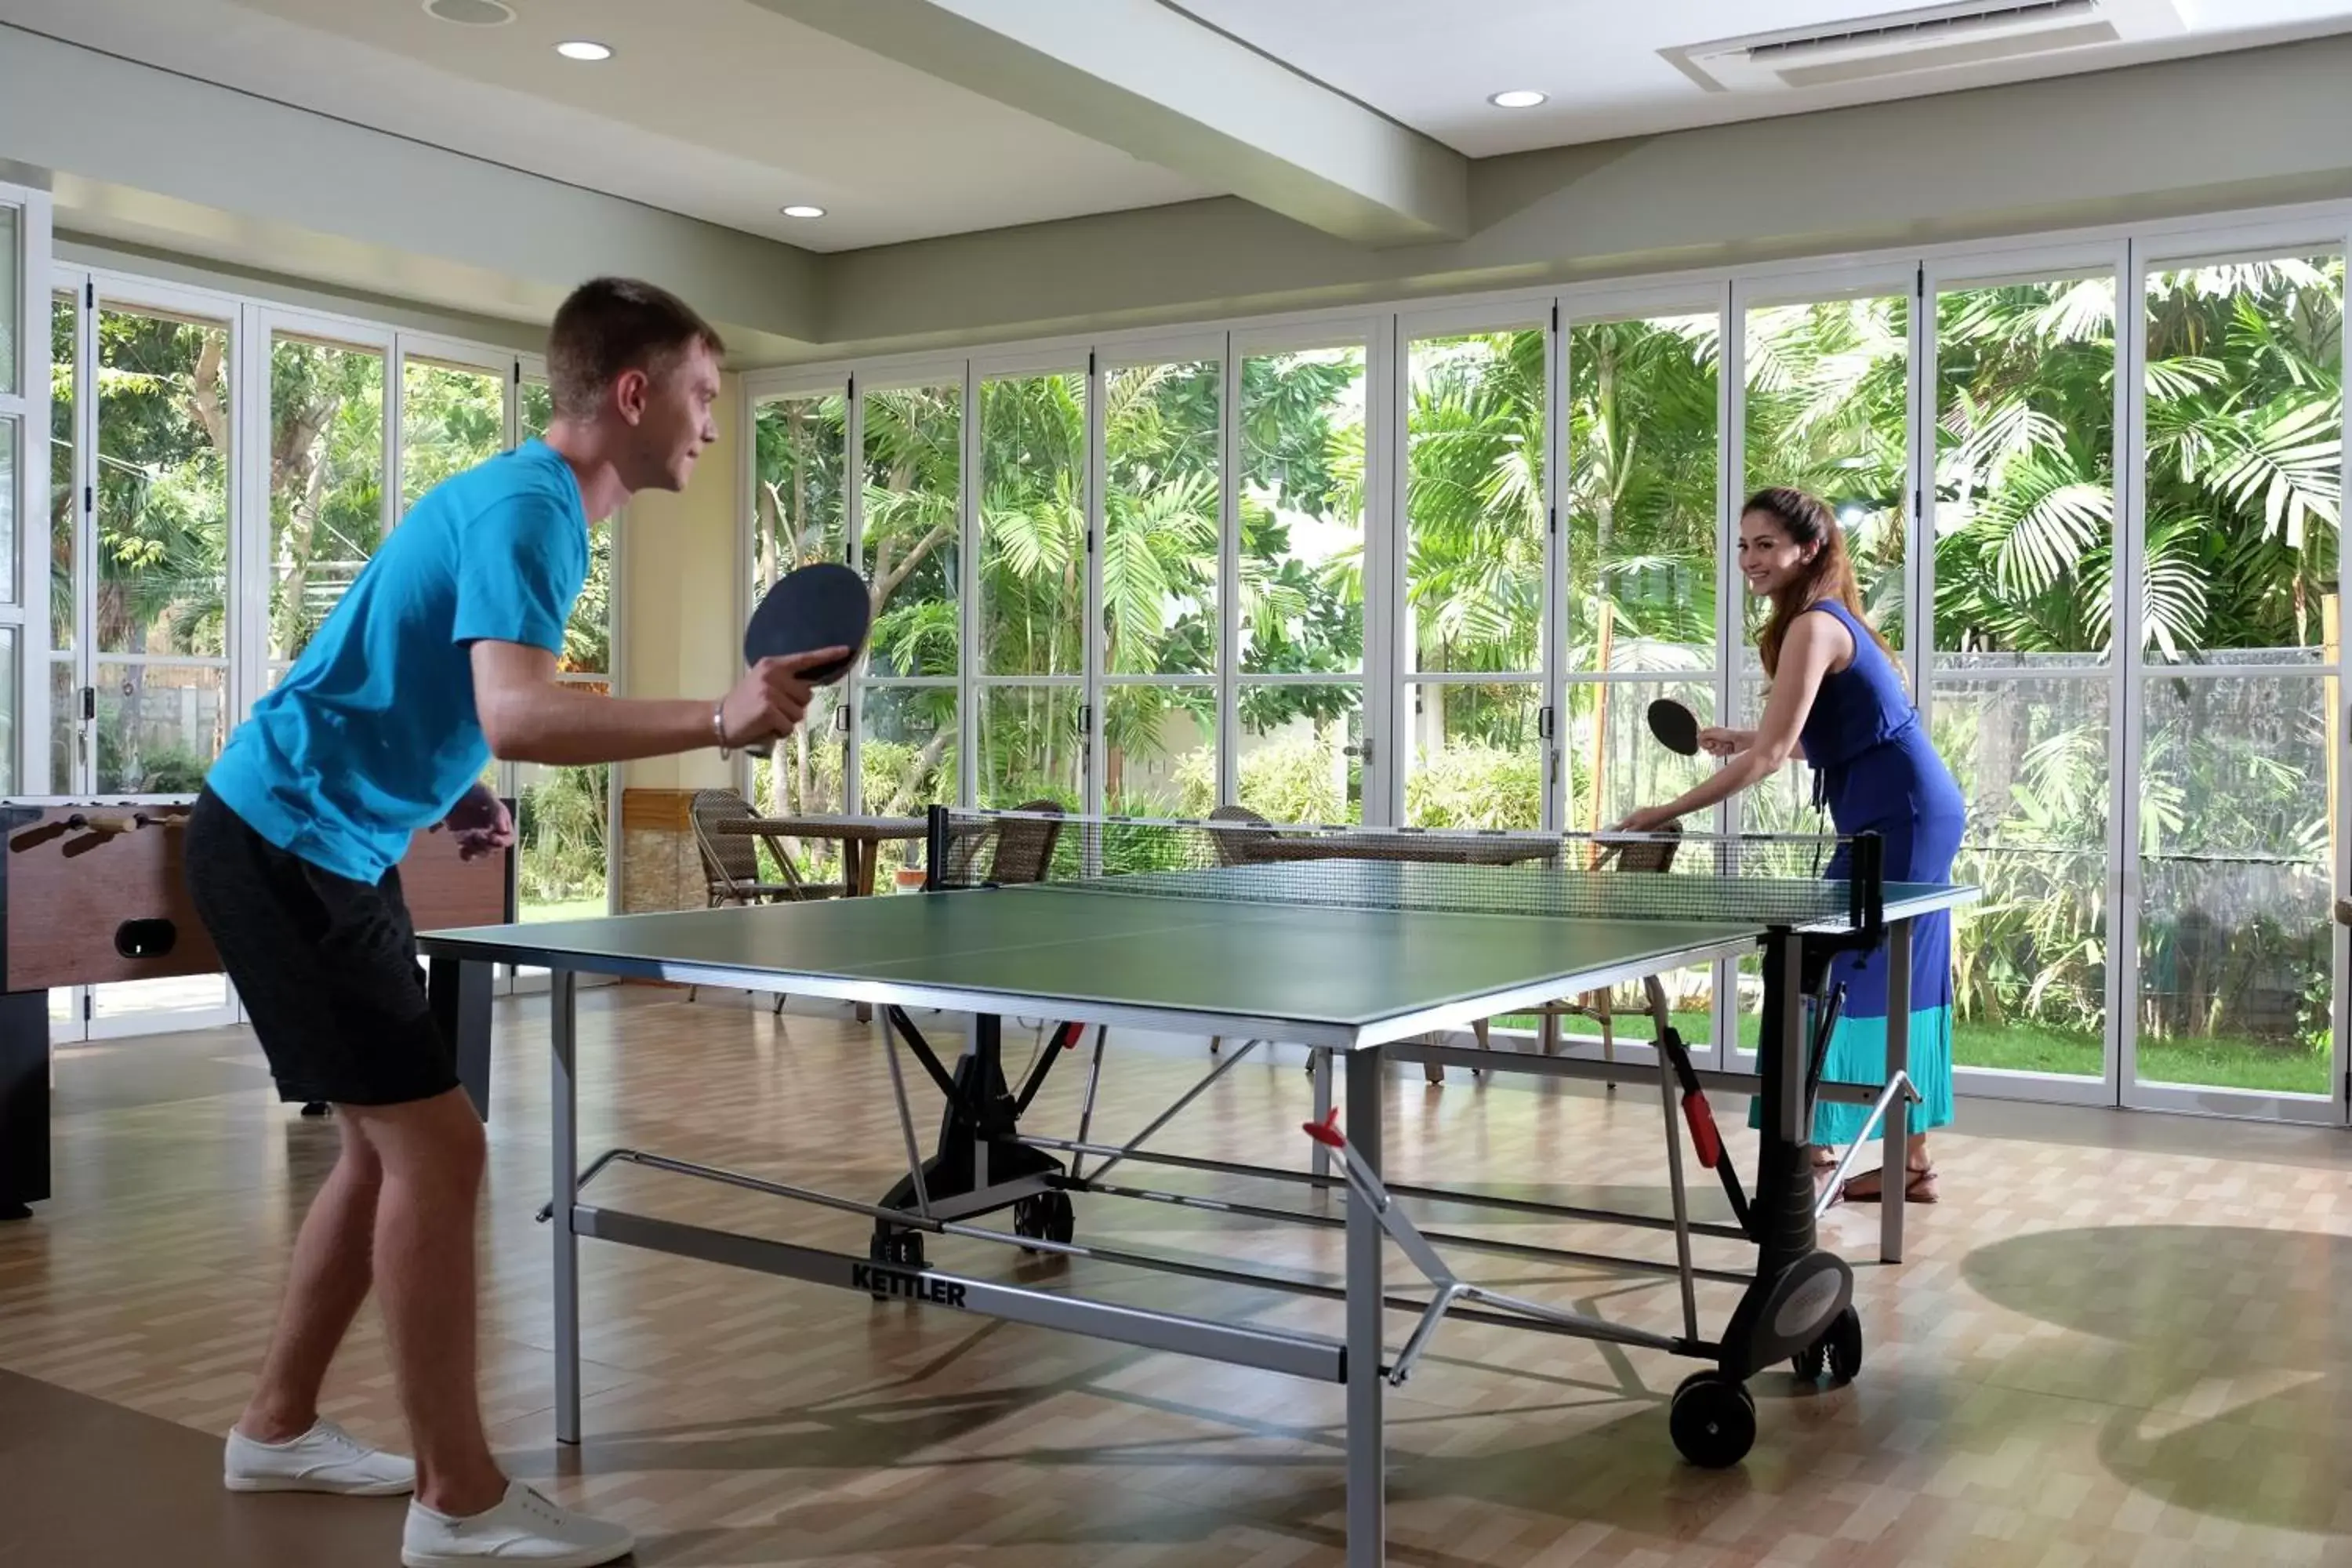 Game Room, Table Tennis in Jpark Island Resort & Waterpark Cebu